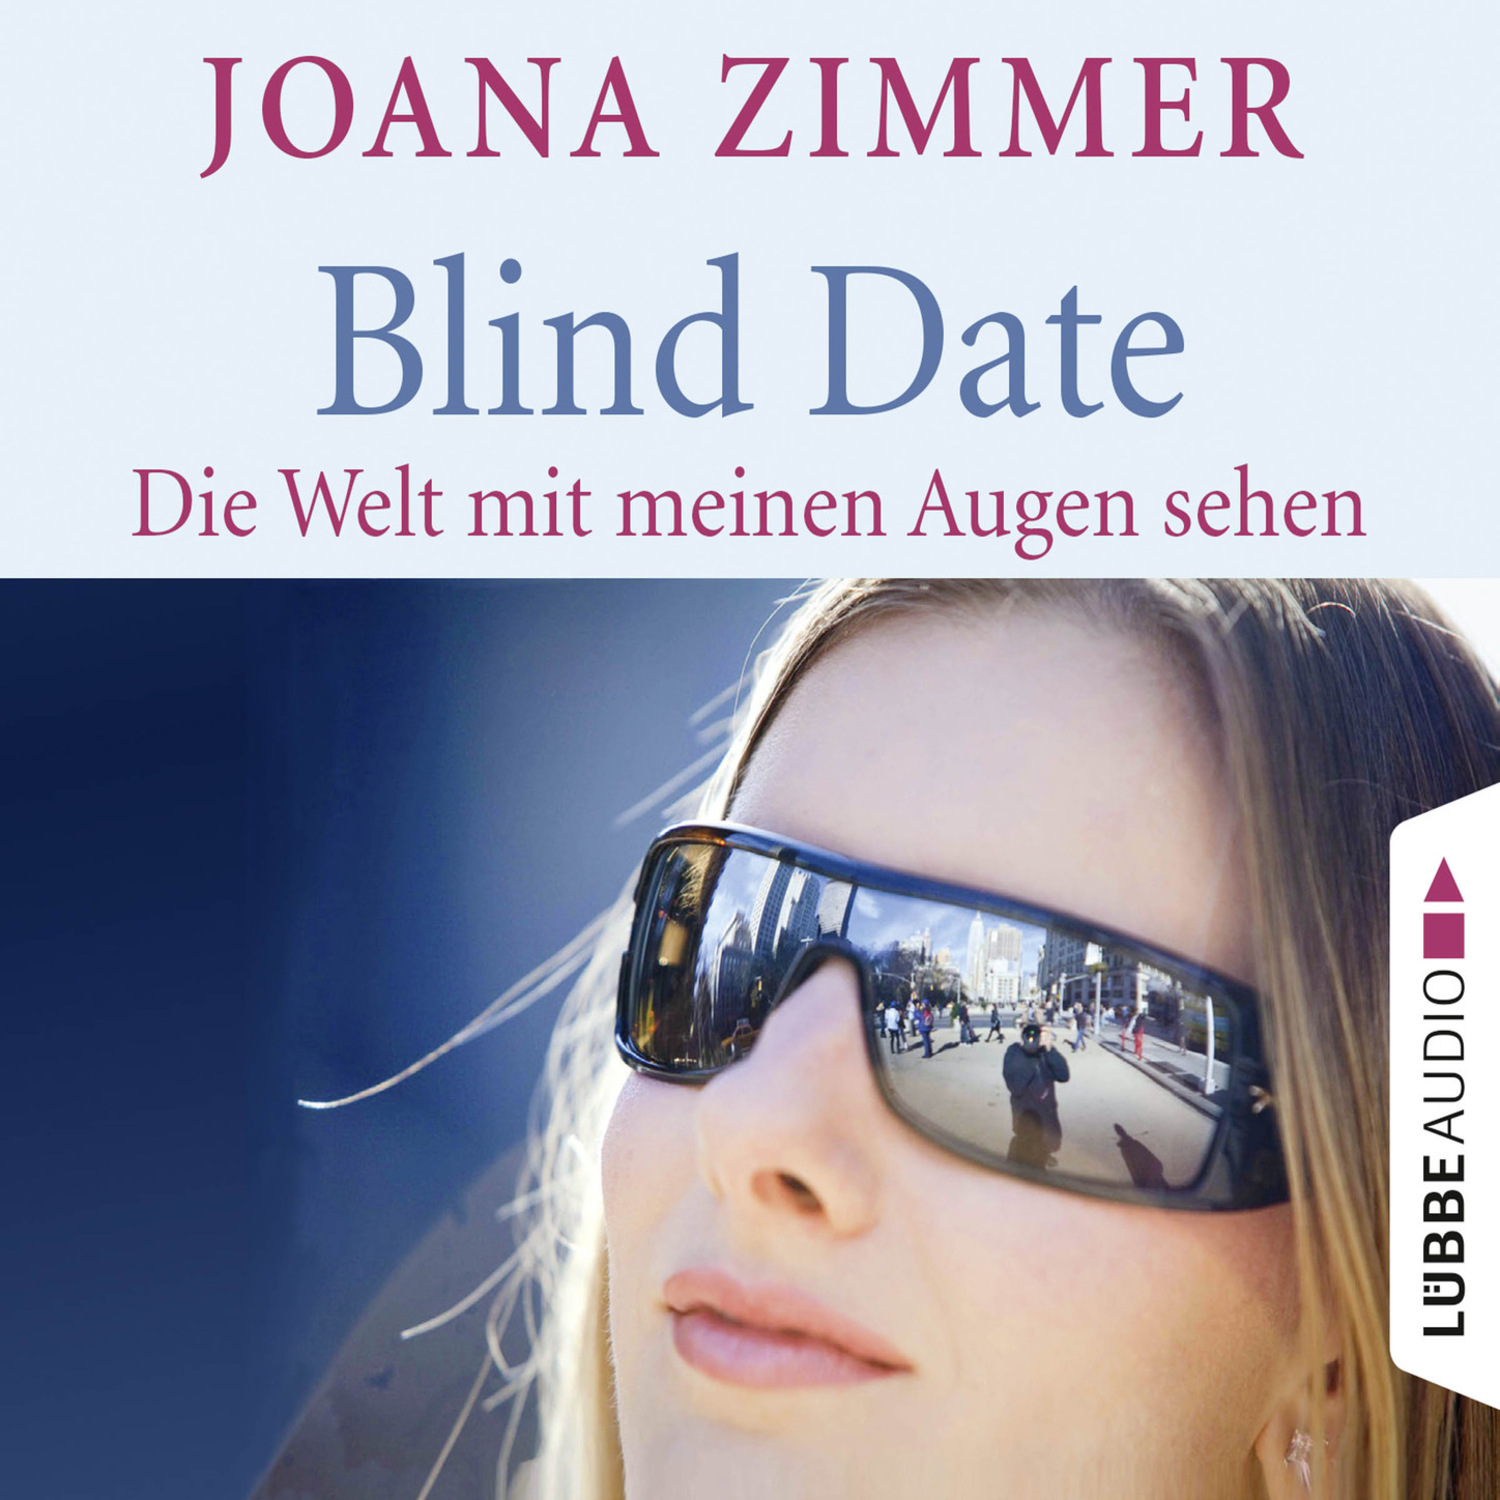 Blind Date - Die Welt mit meinen Augen sehen - Joana Zimmer.